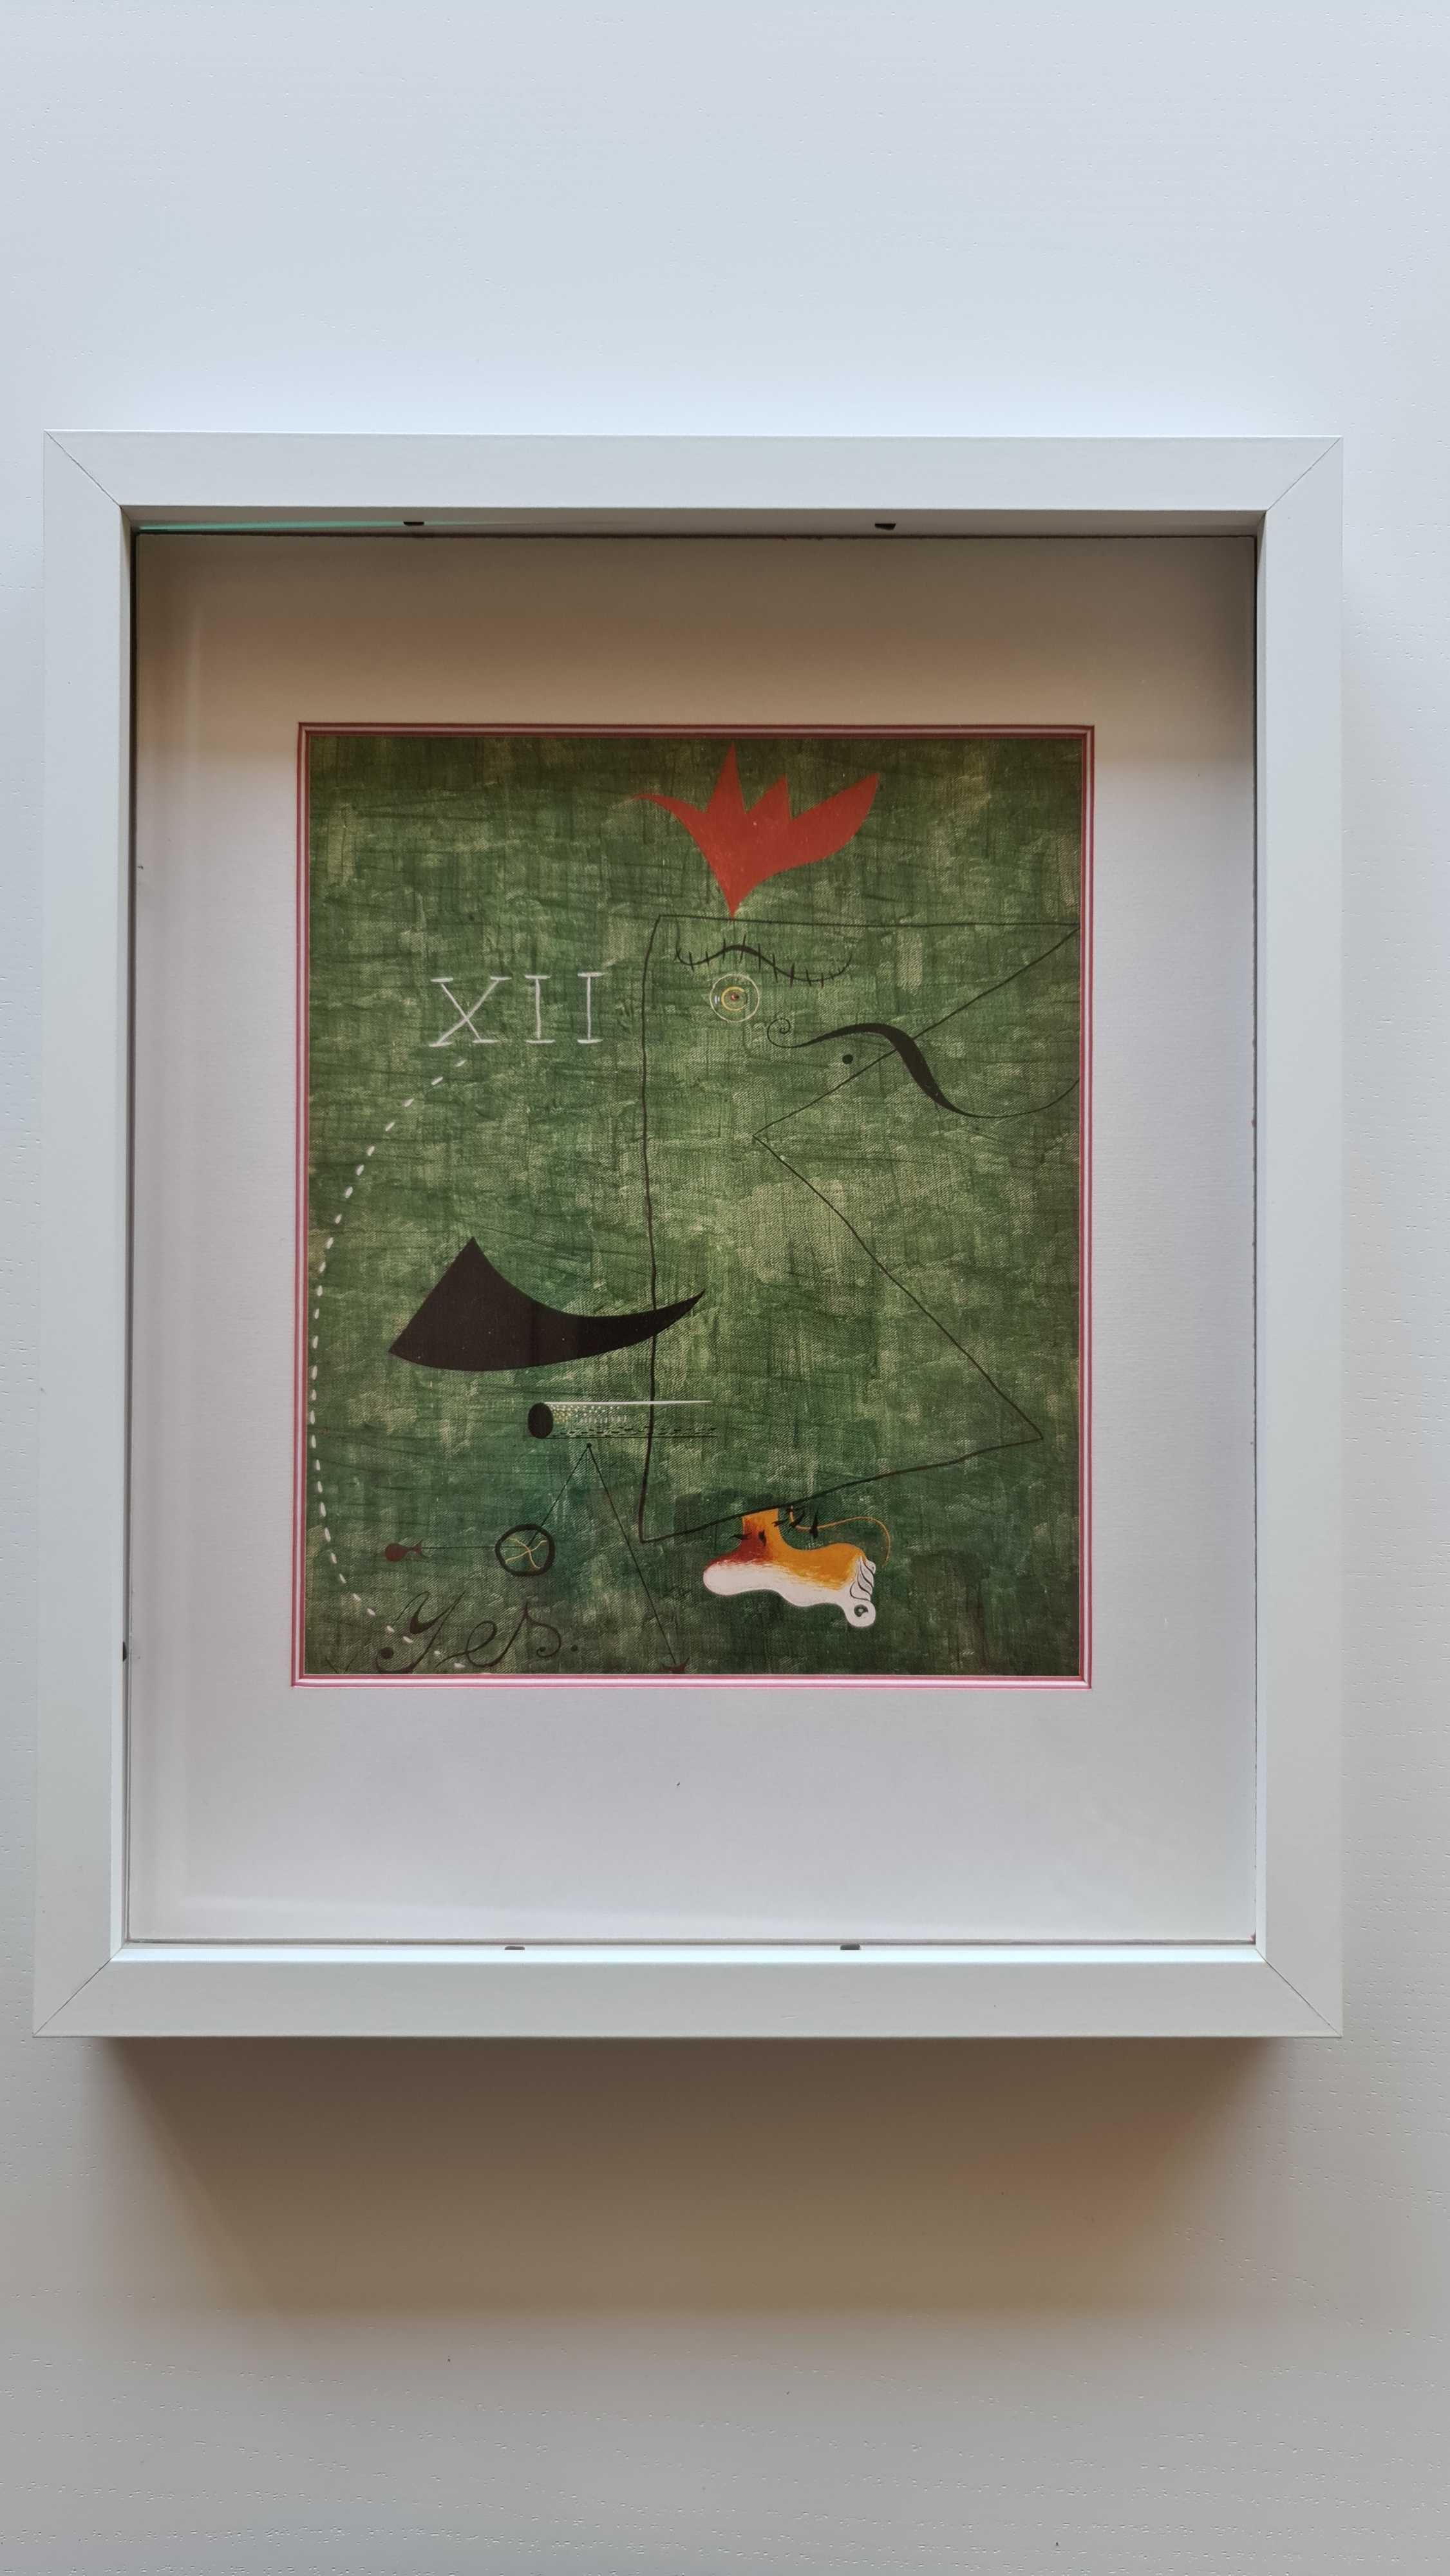 Estampa de quadro de Miró